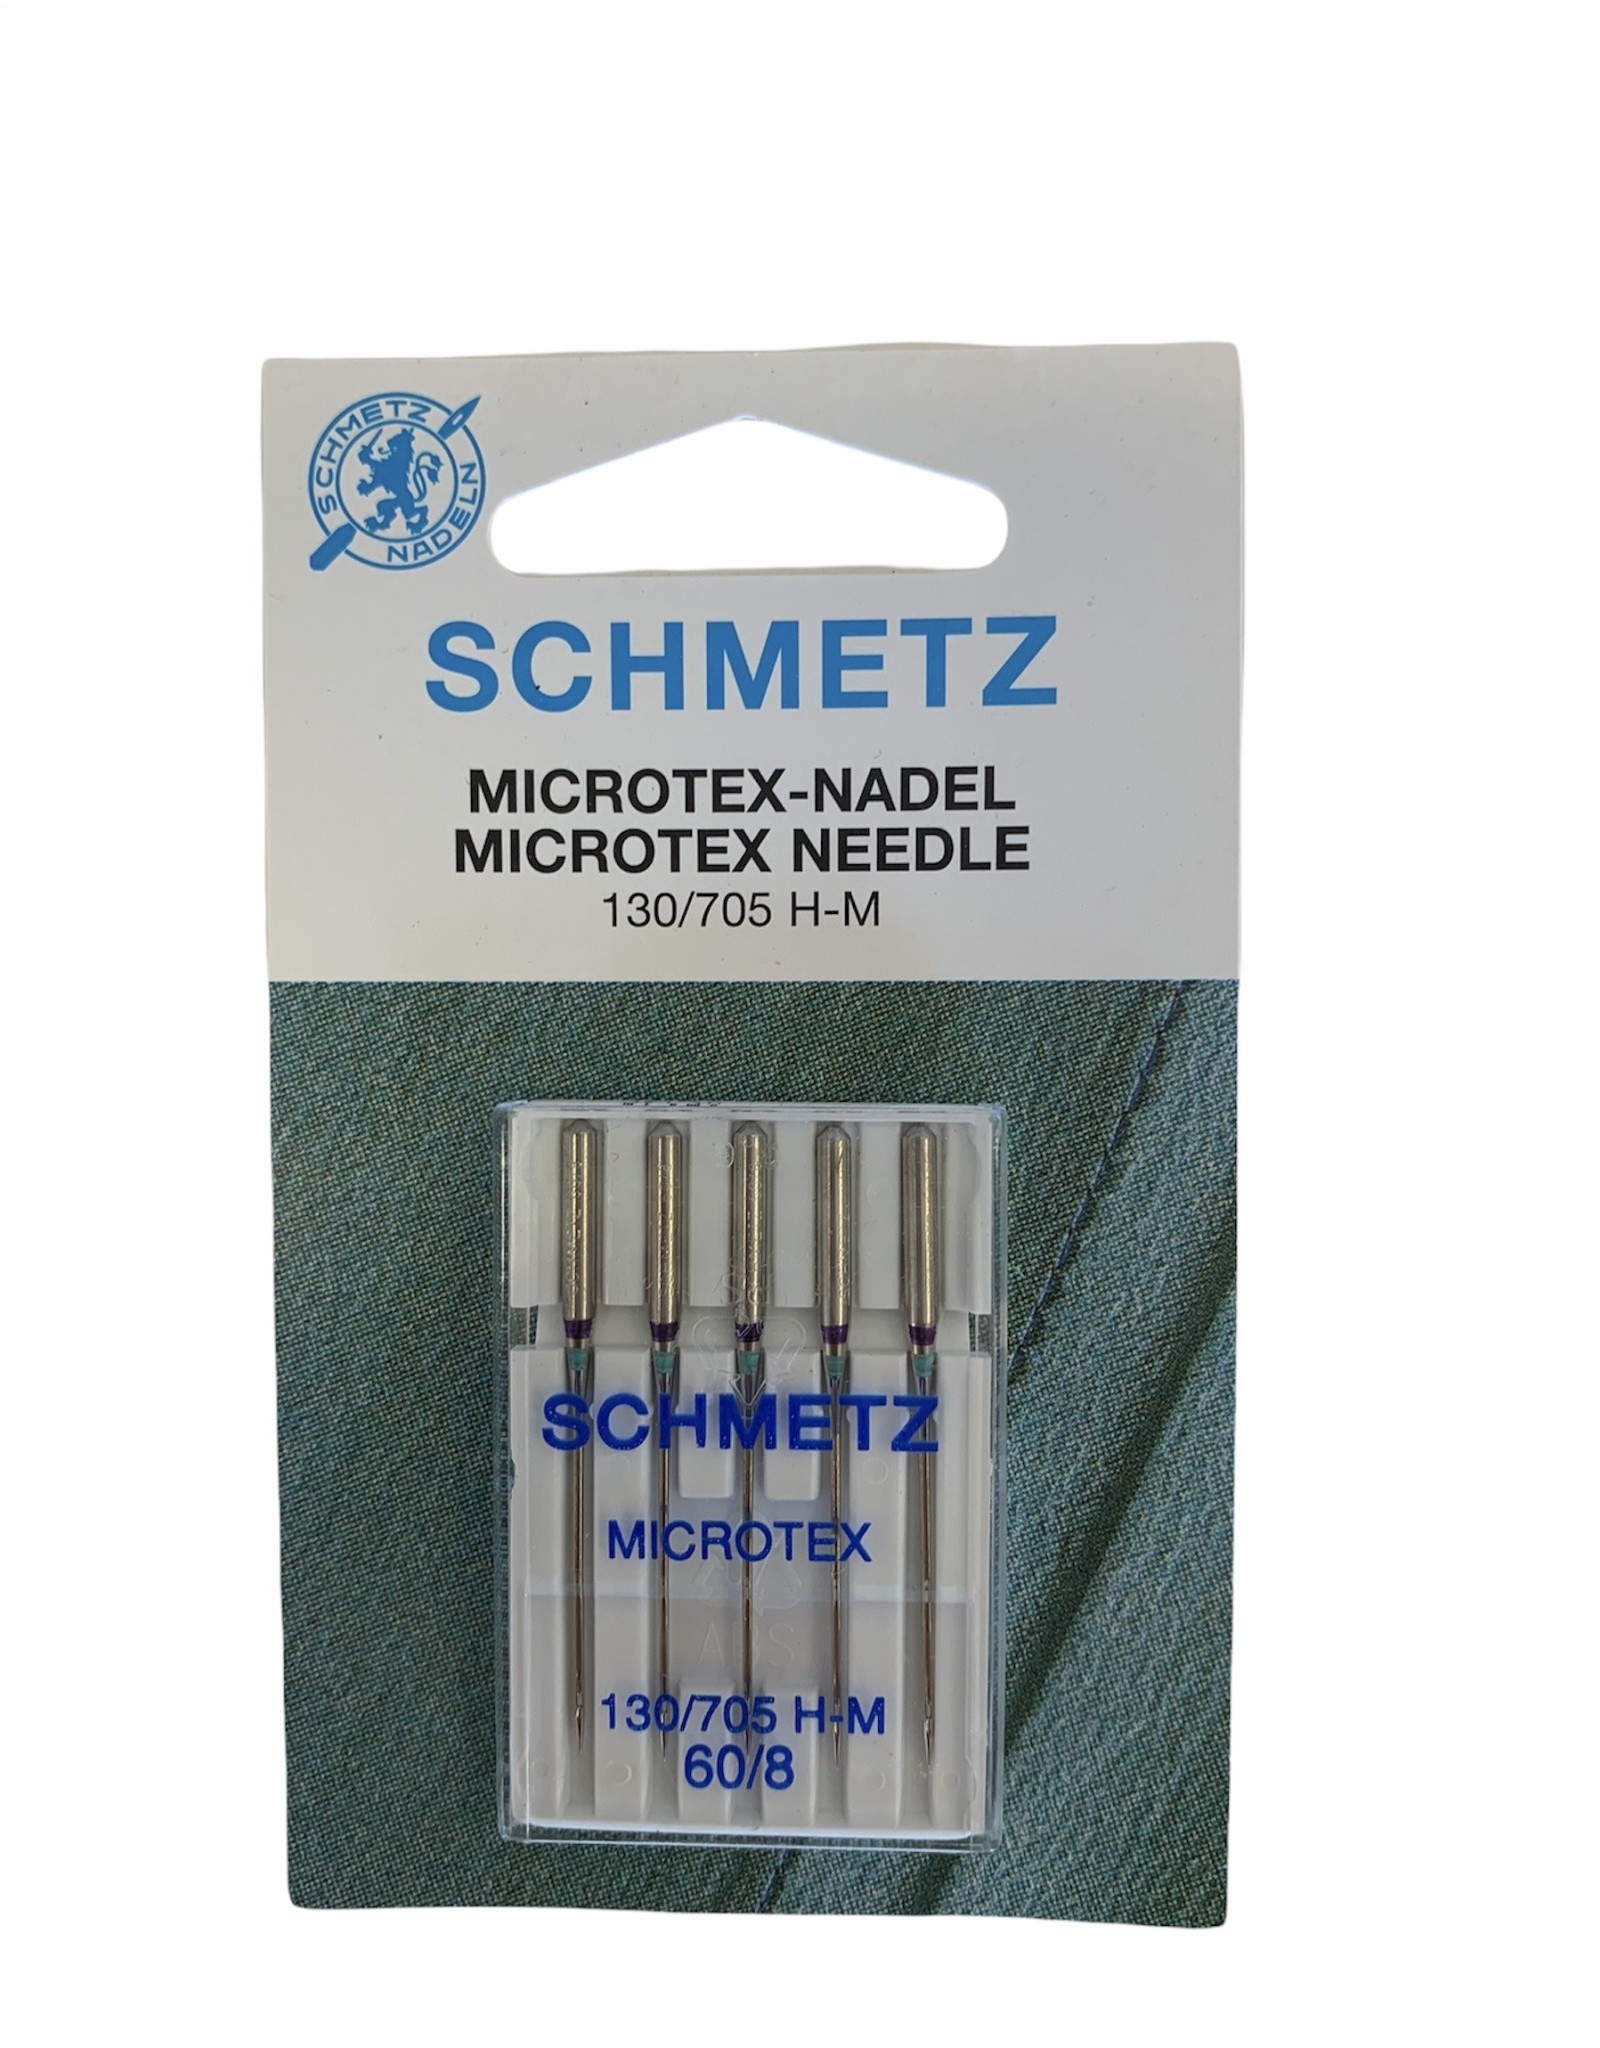 Schmetz Schmetz Microtex Needle 60/8, 130/705 H-M